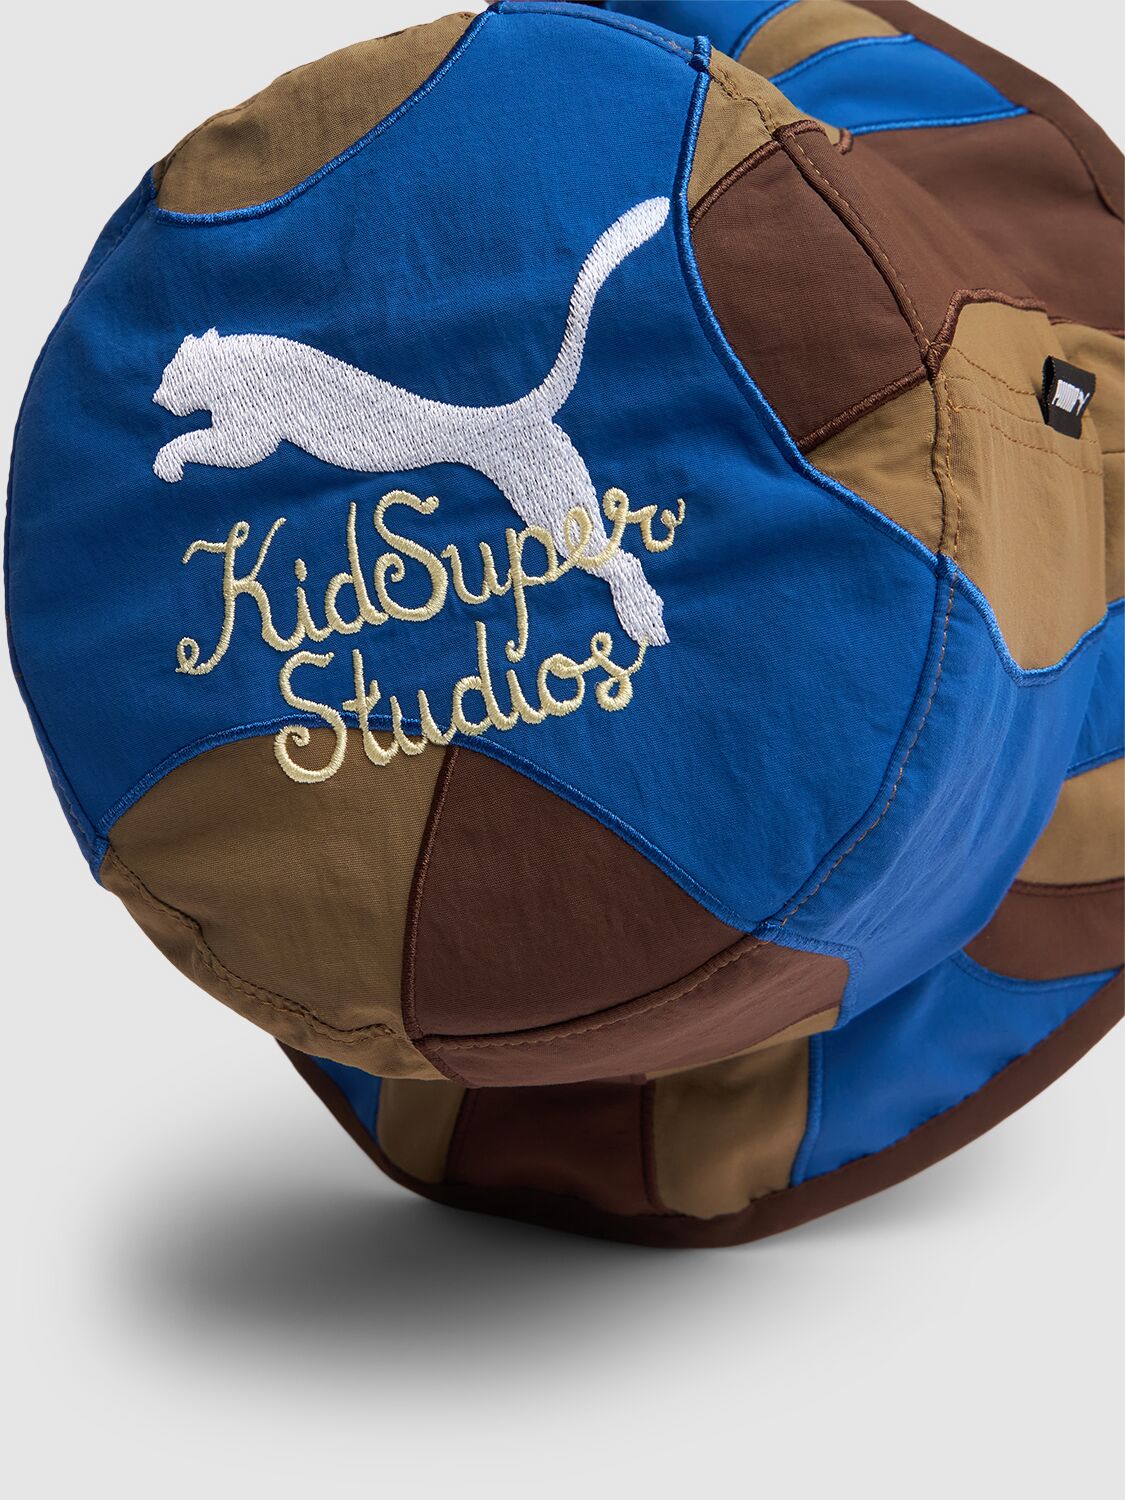 Shop Puma Kidsuper Studios Bucket Hat In Oak Branch